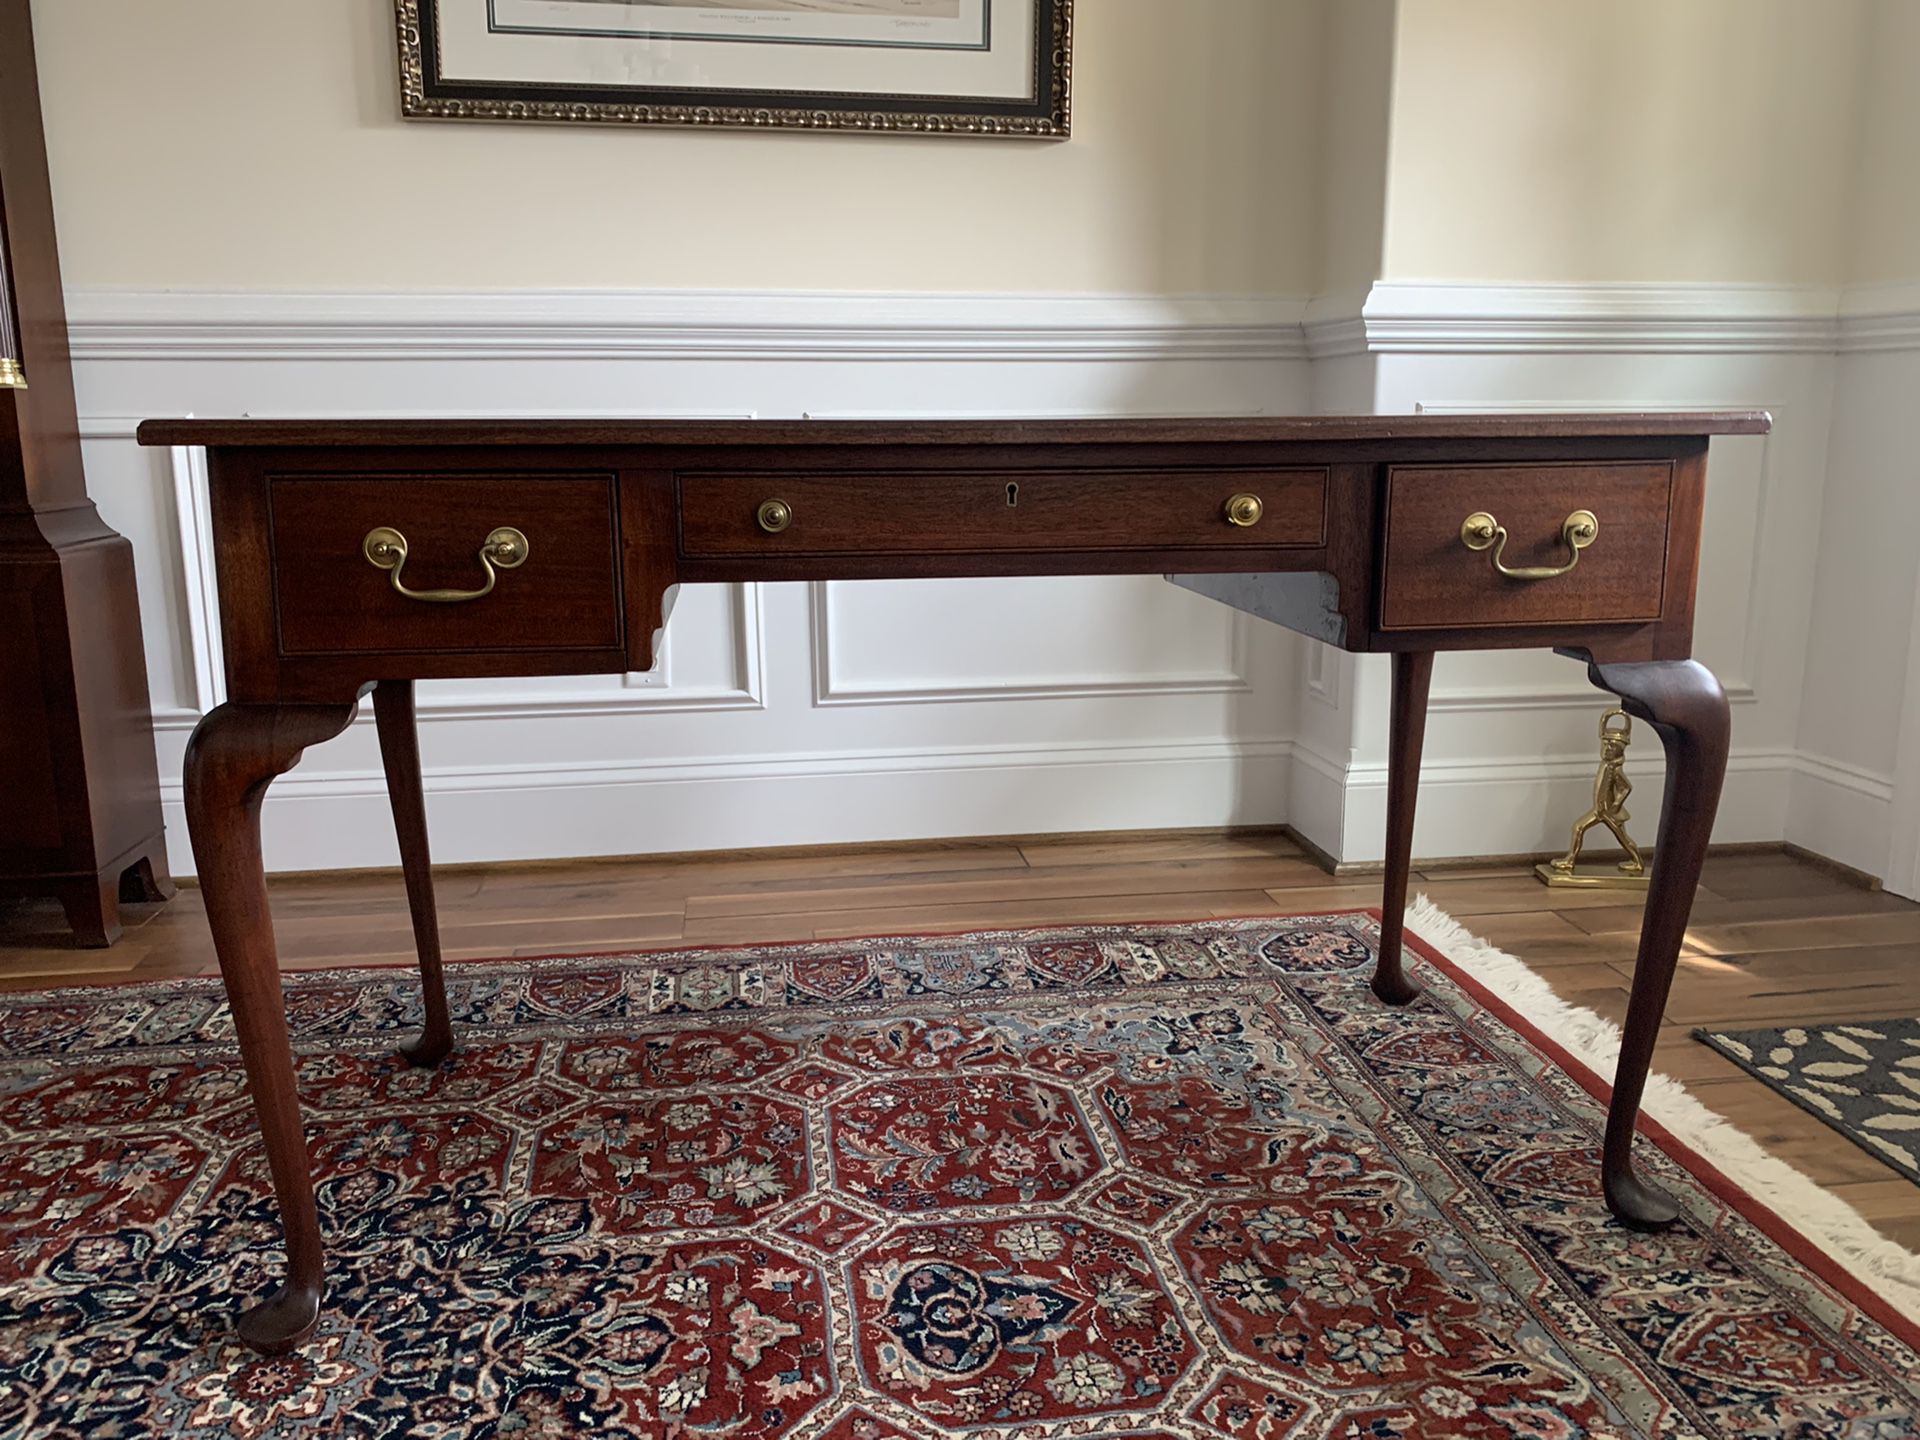 Ladies antique desk. Refinished Biggs furniture of Virginia. 50”w x24”d x30h $300.00